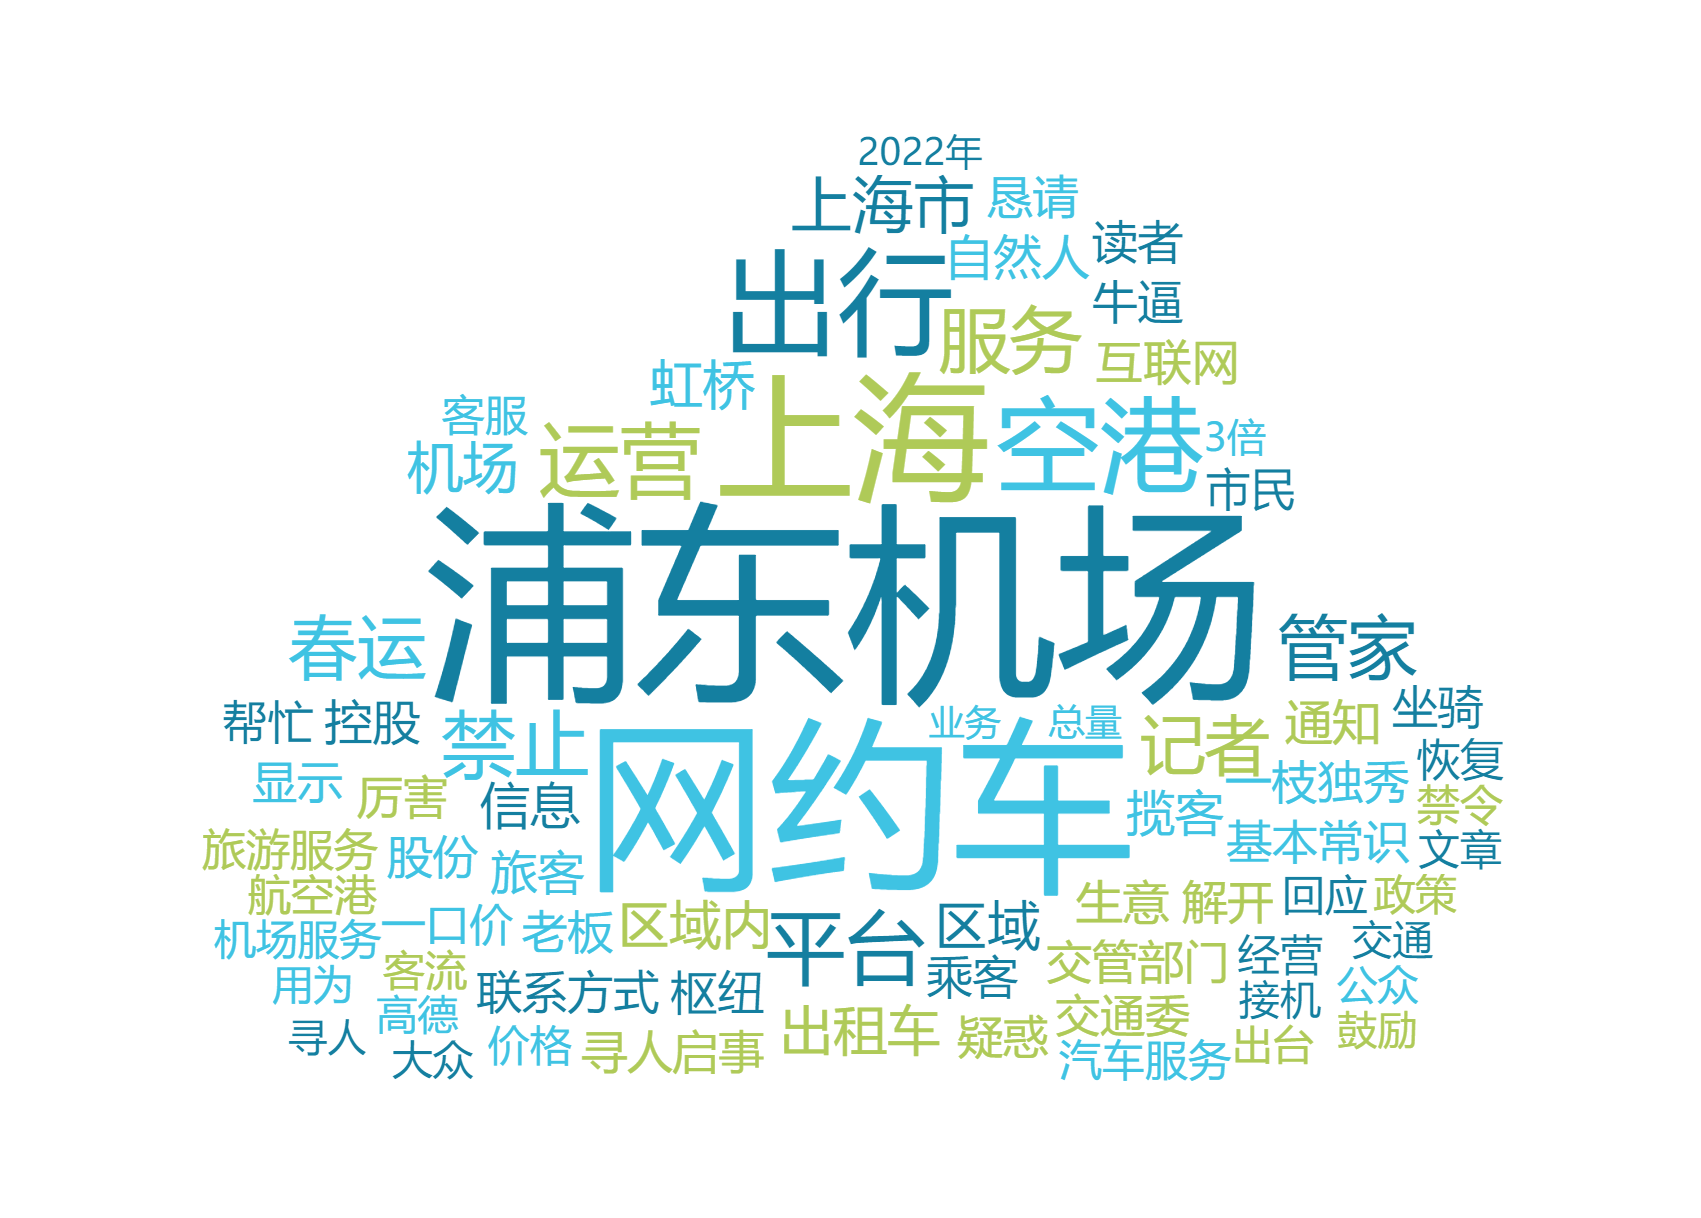 舆论点赞上海恢复浦东机场网约车运营